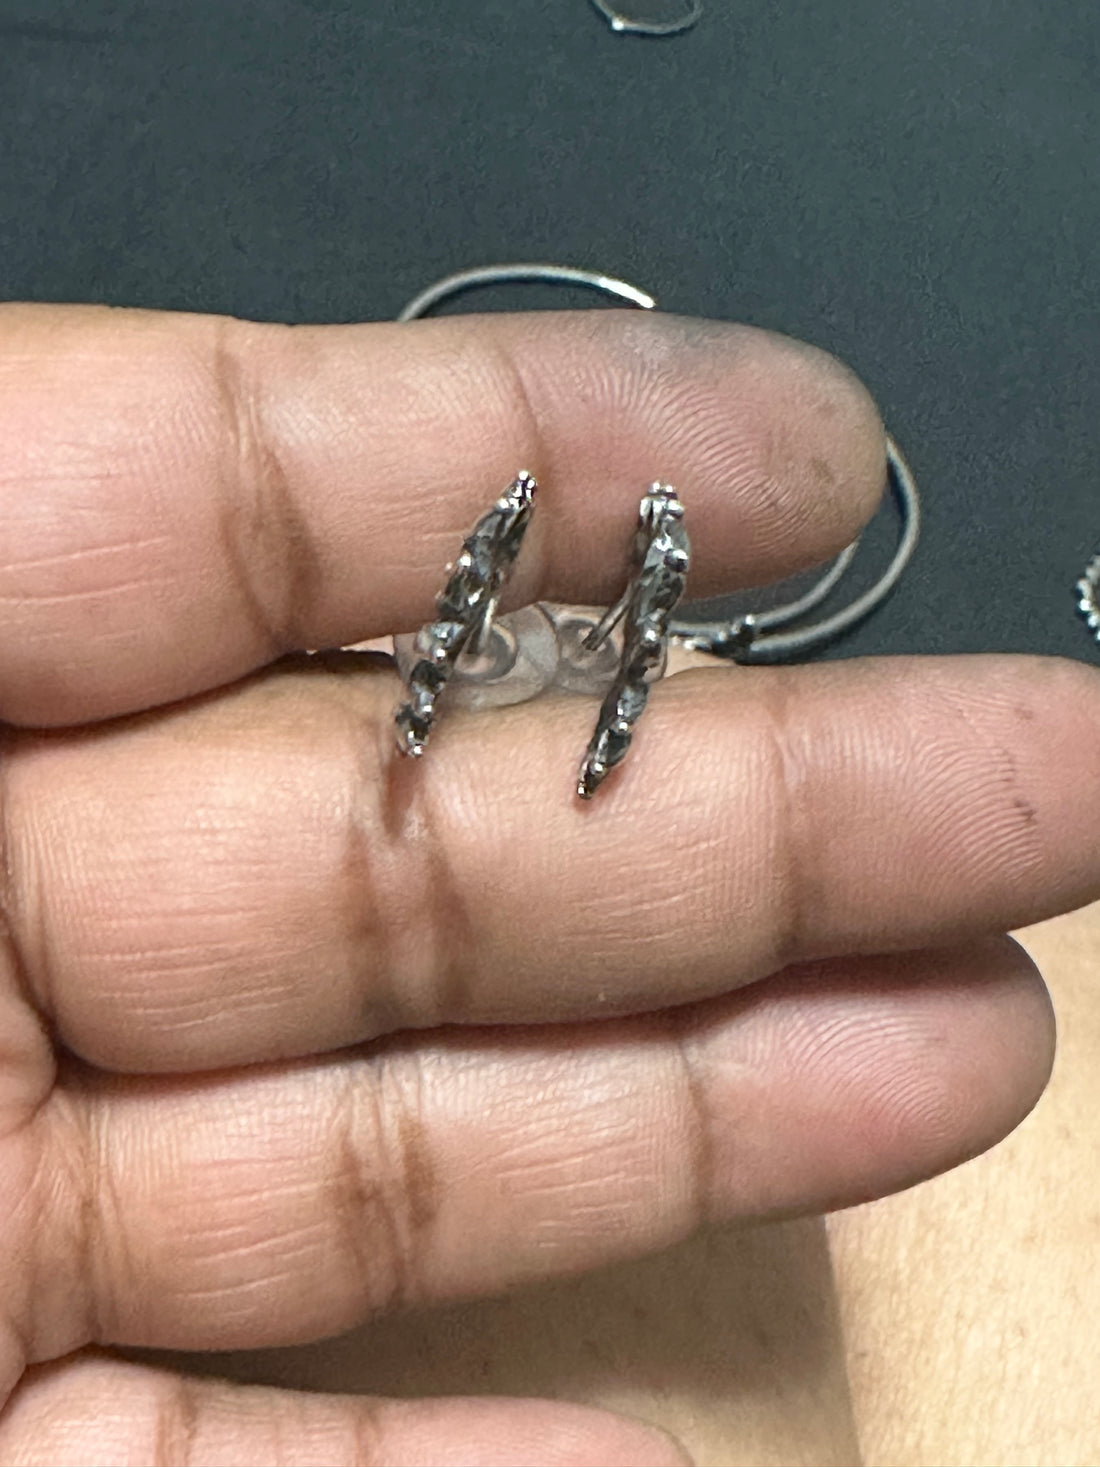 Sunrise Sterling Silver earrings MTO